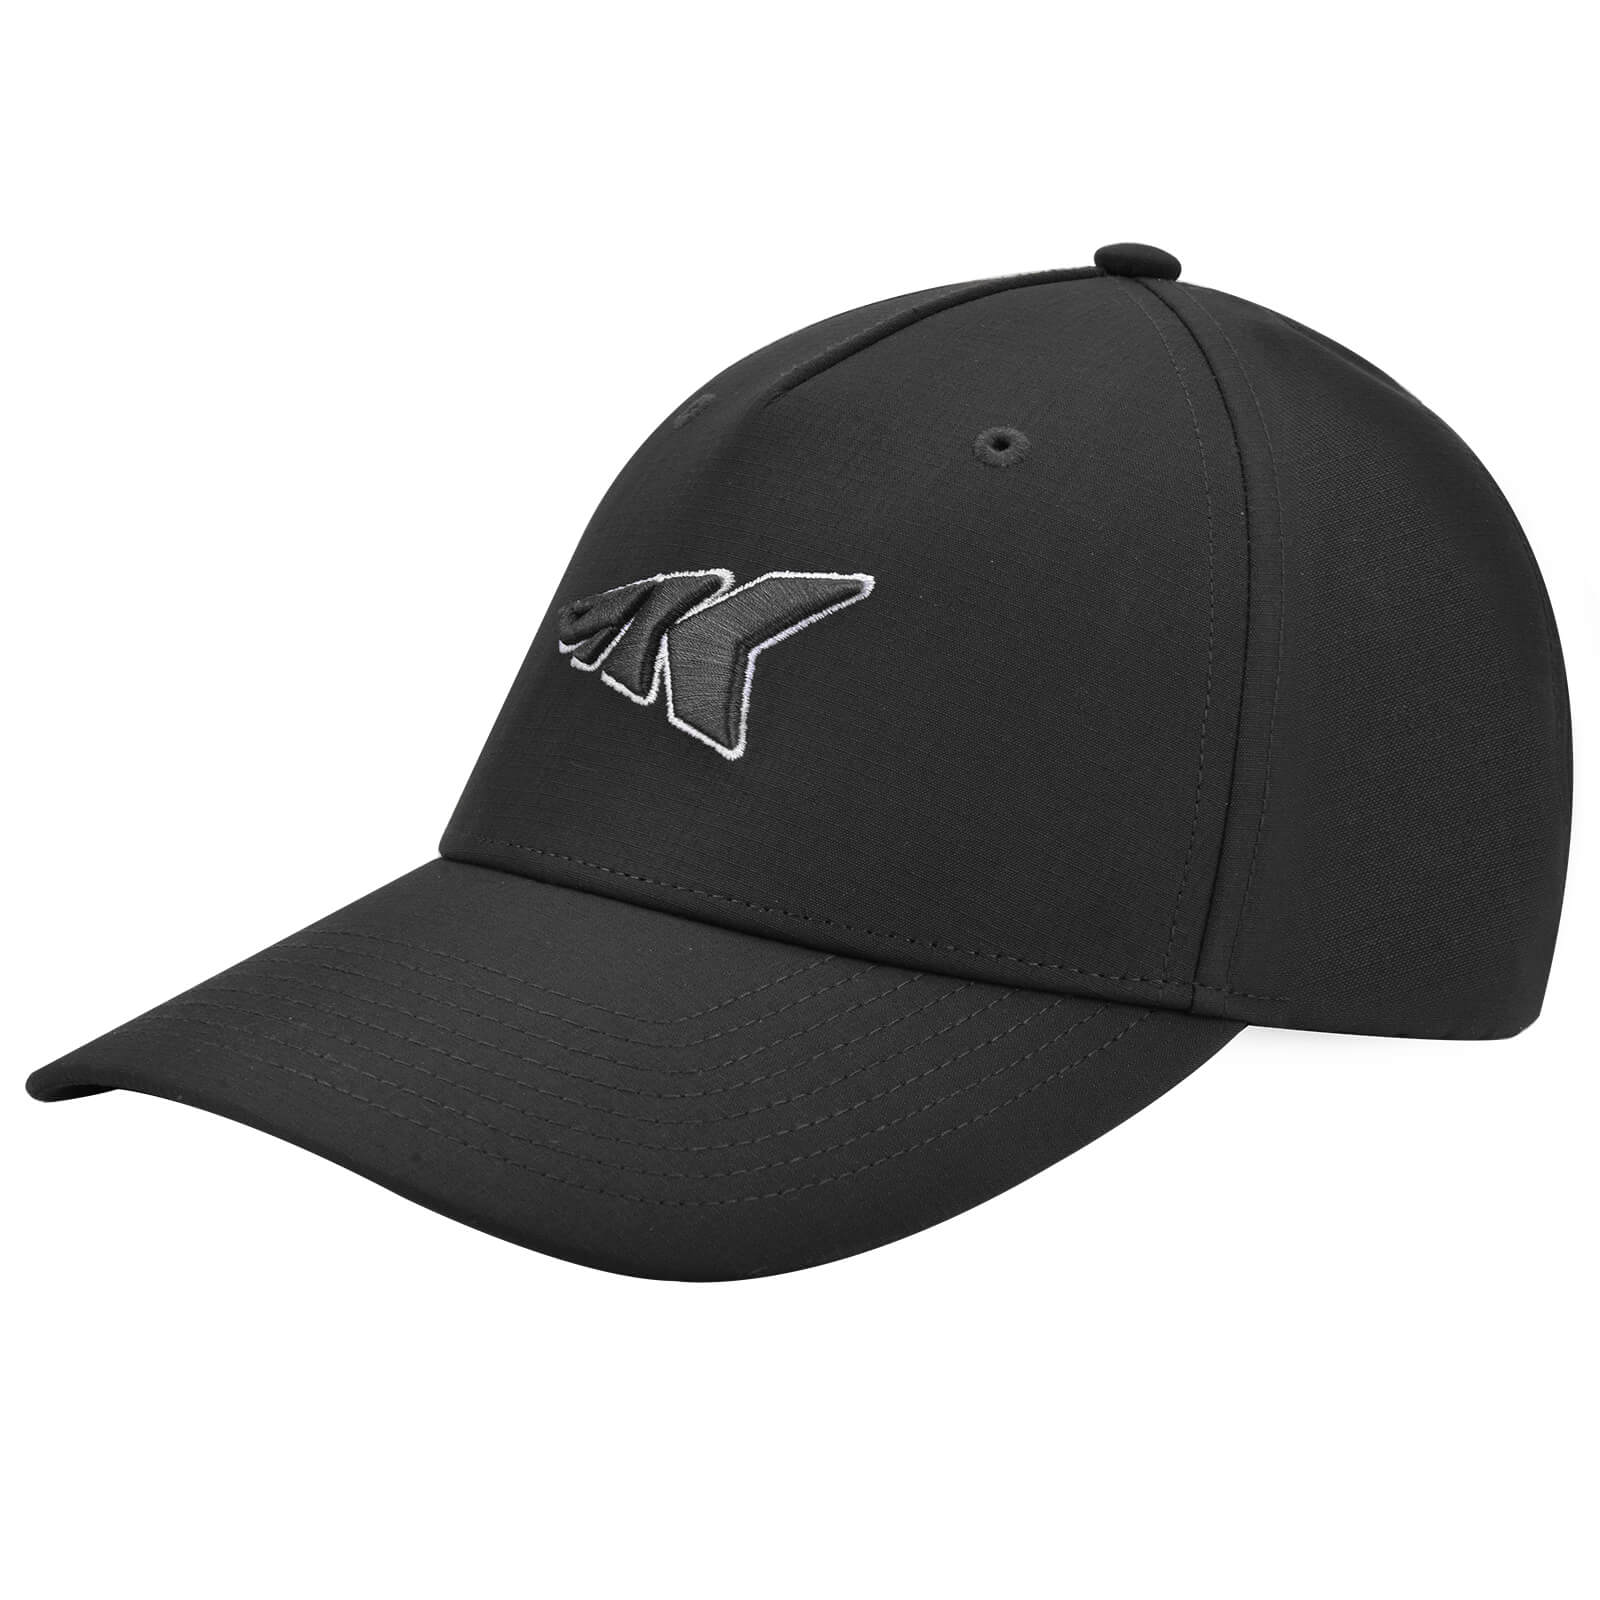 KastKing Official Caps - Adjustable / Black